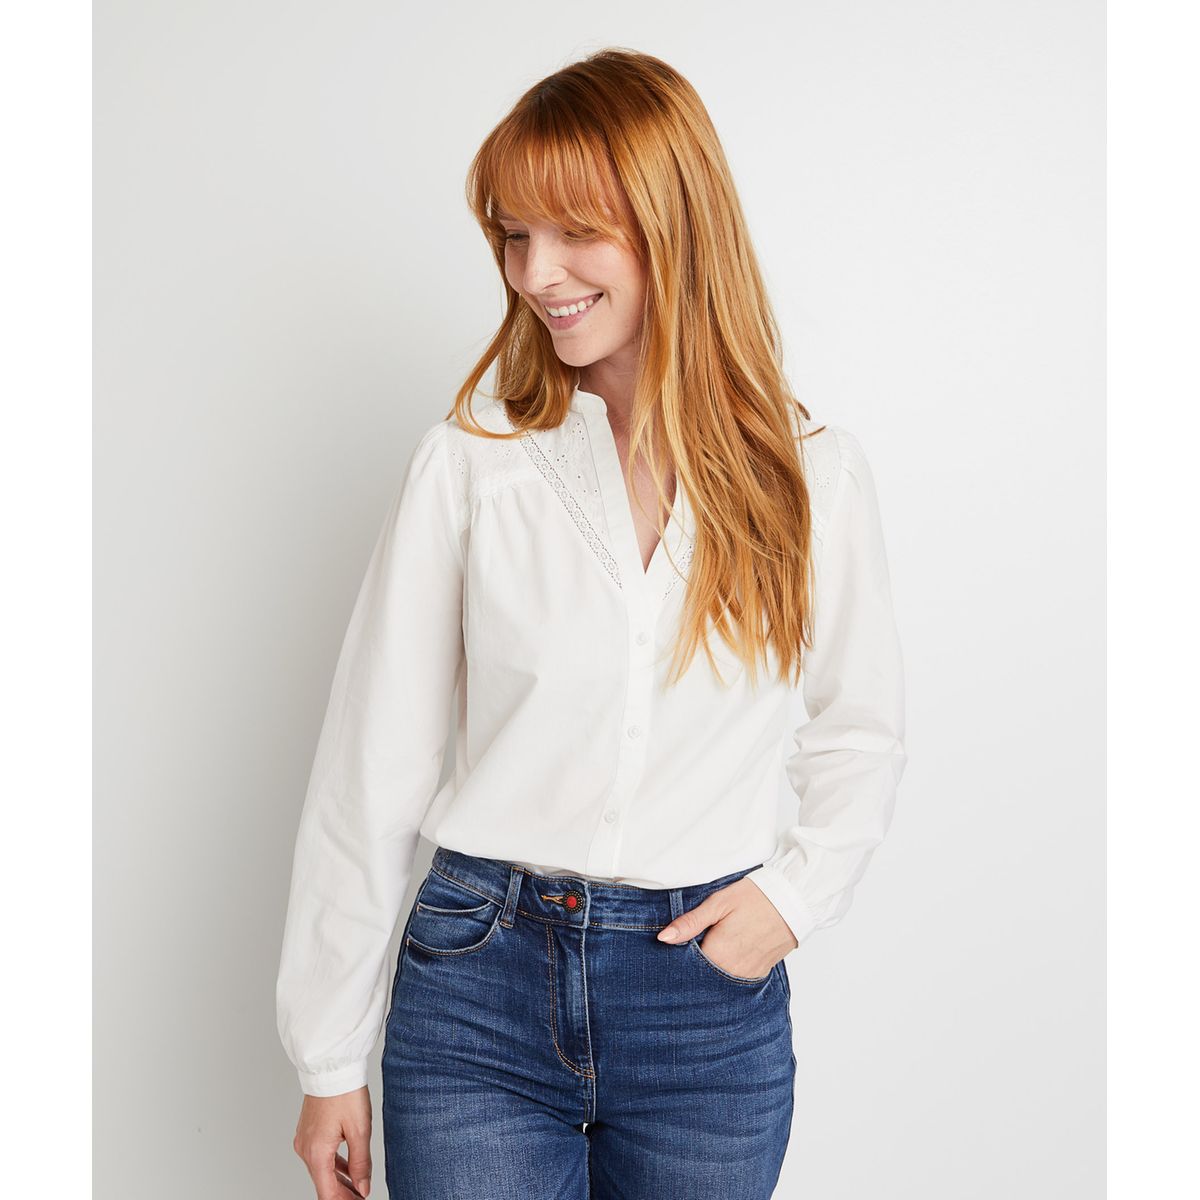 Femme Vêtements Sweats et pull overs Pulls sans manches Chemise En Popeline De Coton Coton Patou en coloris Blanc 